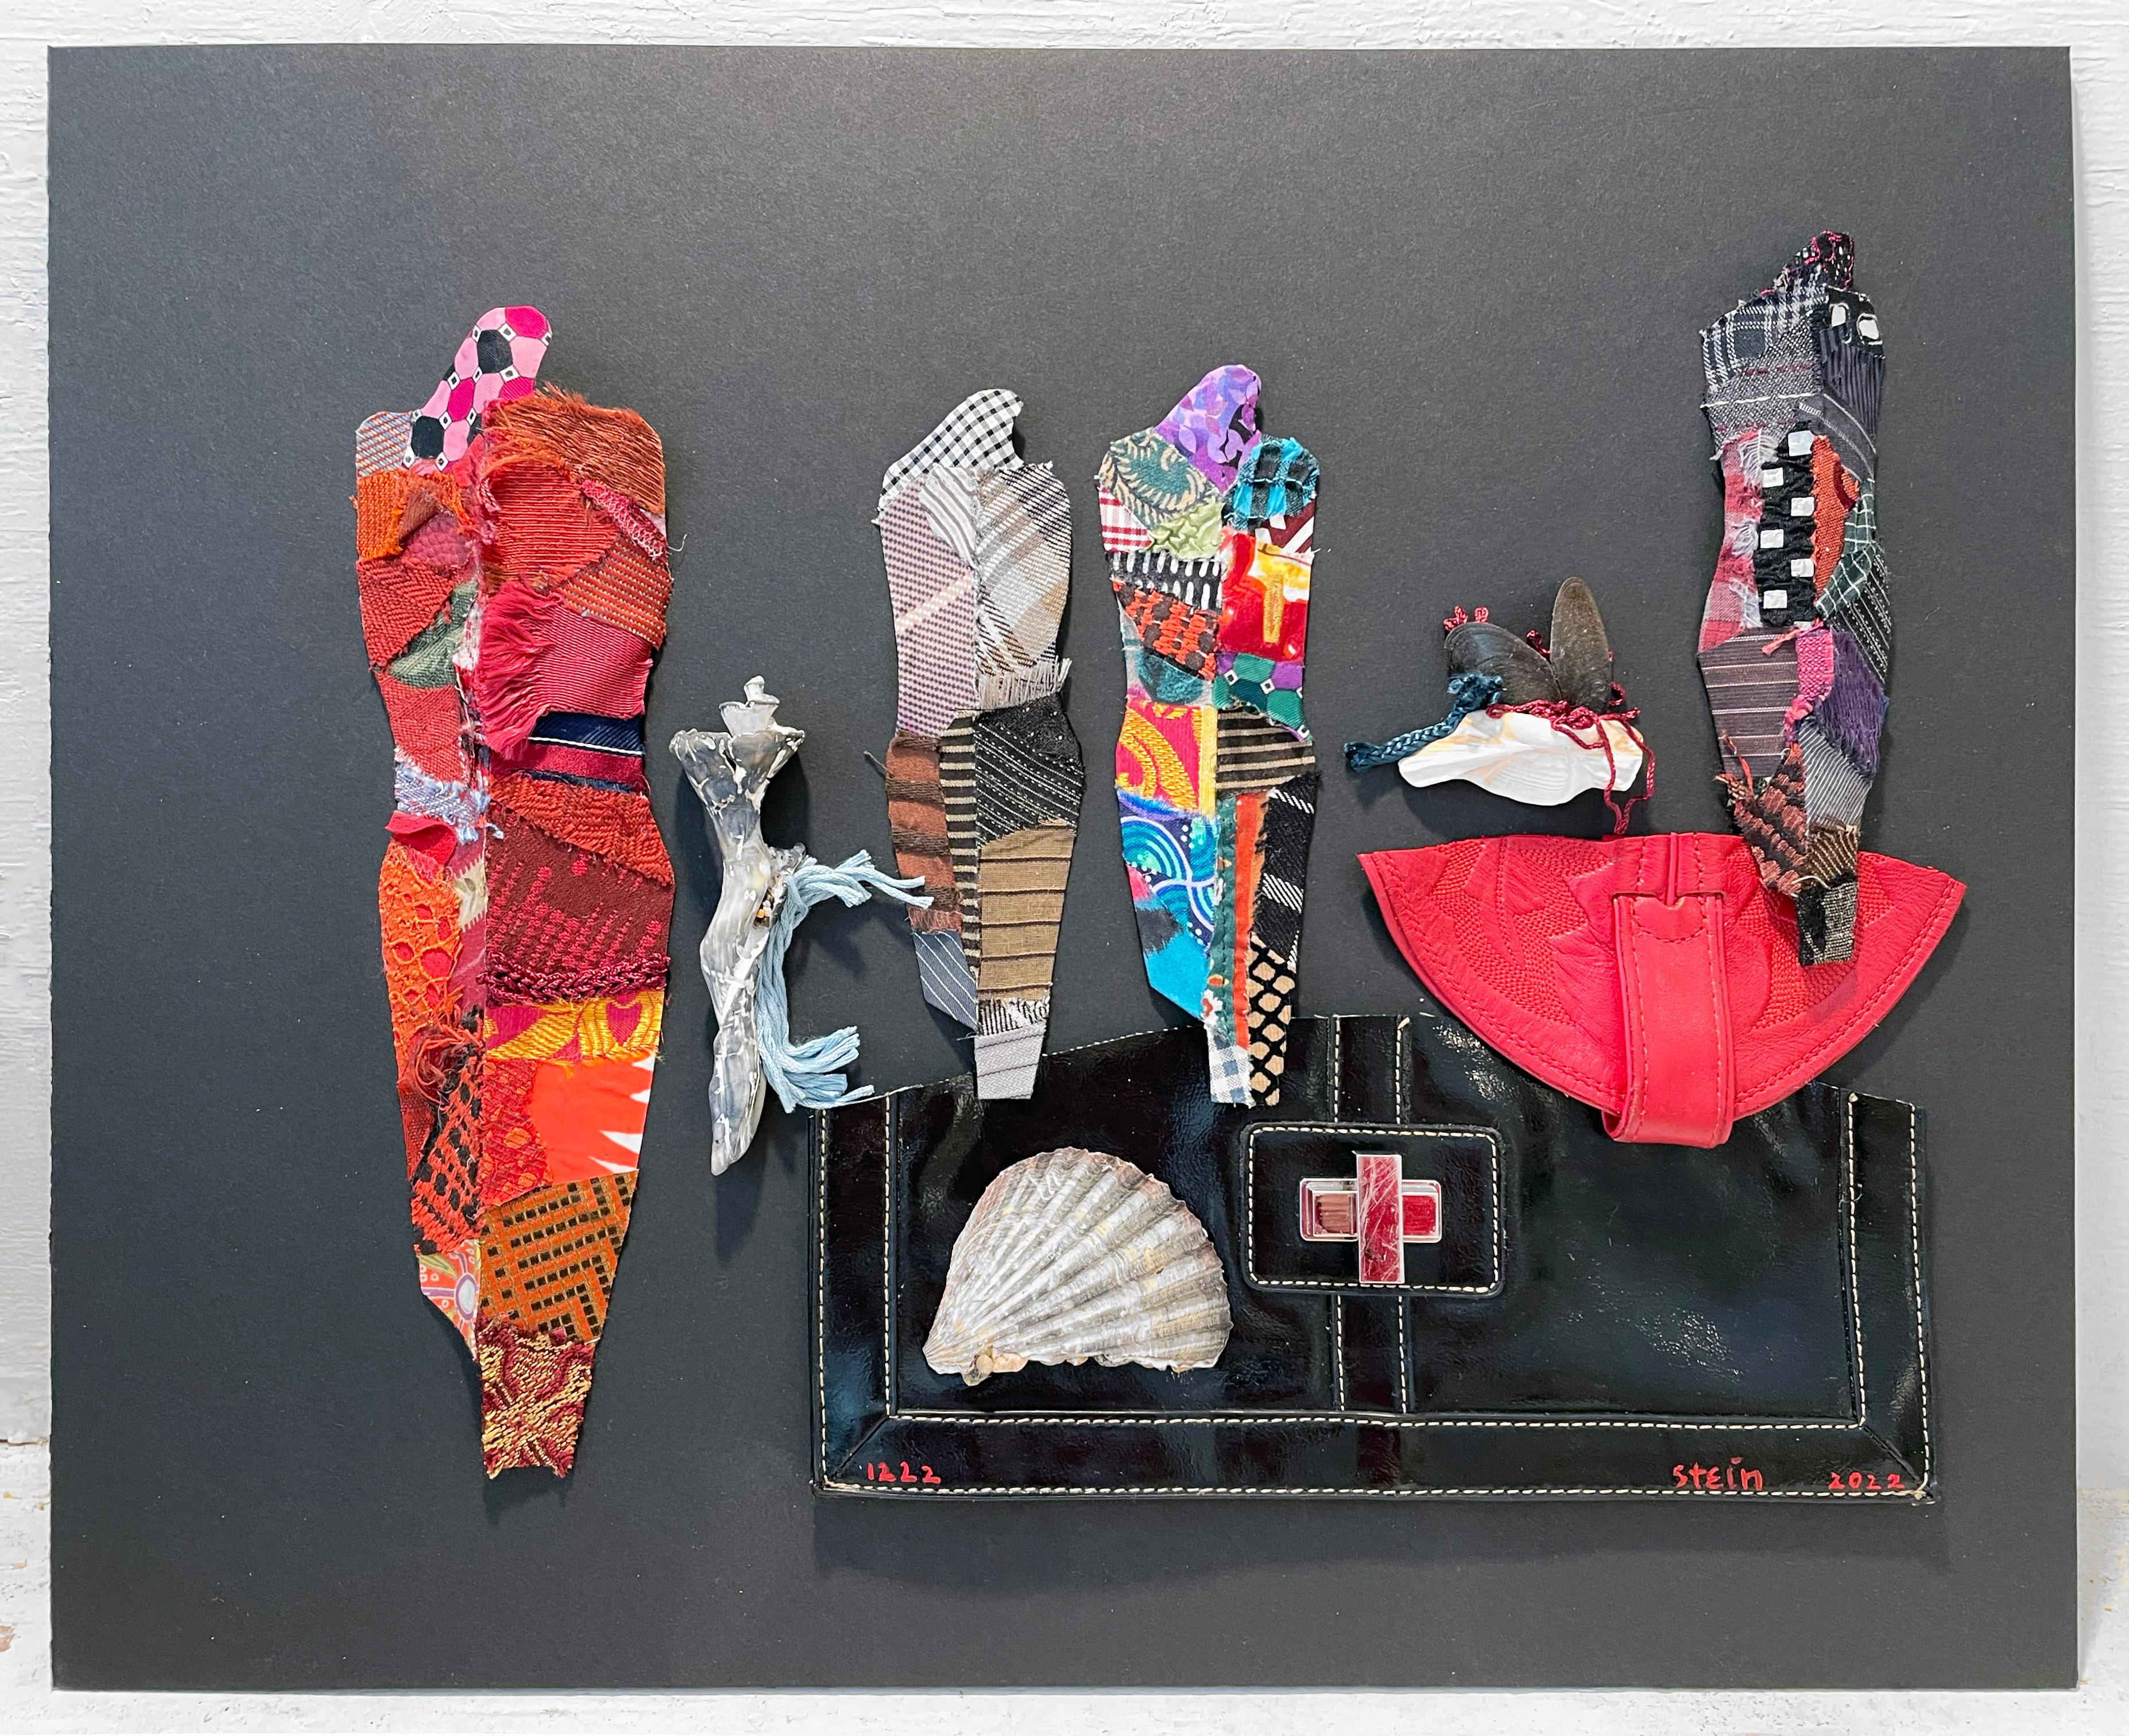 Linda Stein, 1222 - Contemporary Art 3D Mixed Media Fabric Sculptural Collage

Linda Stein begann ihre Knights of Protection-Serie, nachdem sie nach dem 11. September 2001 gezwungen war, ihr Studio in Downtown New York für ein Jahr zu räumen.  Die